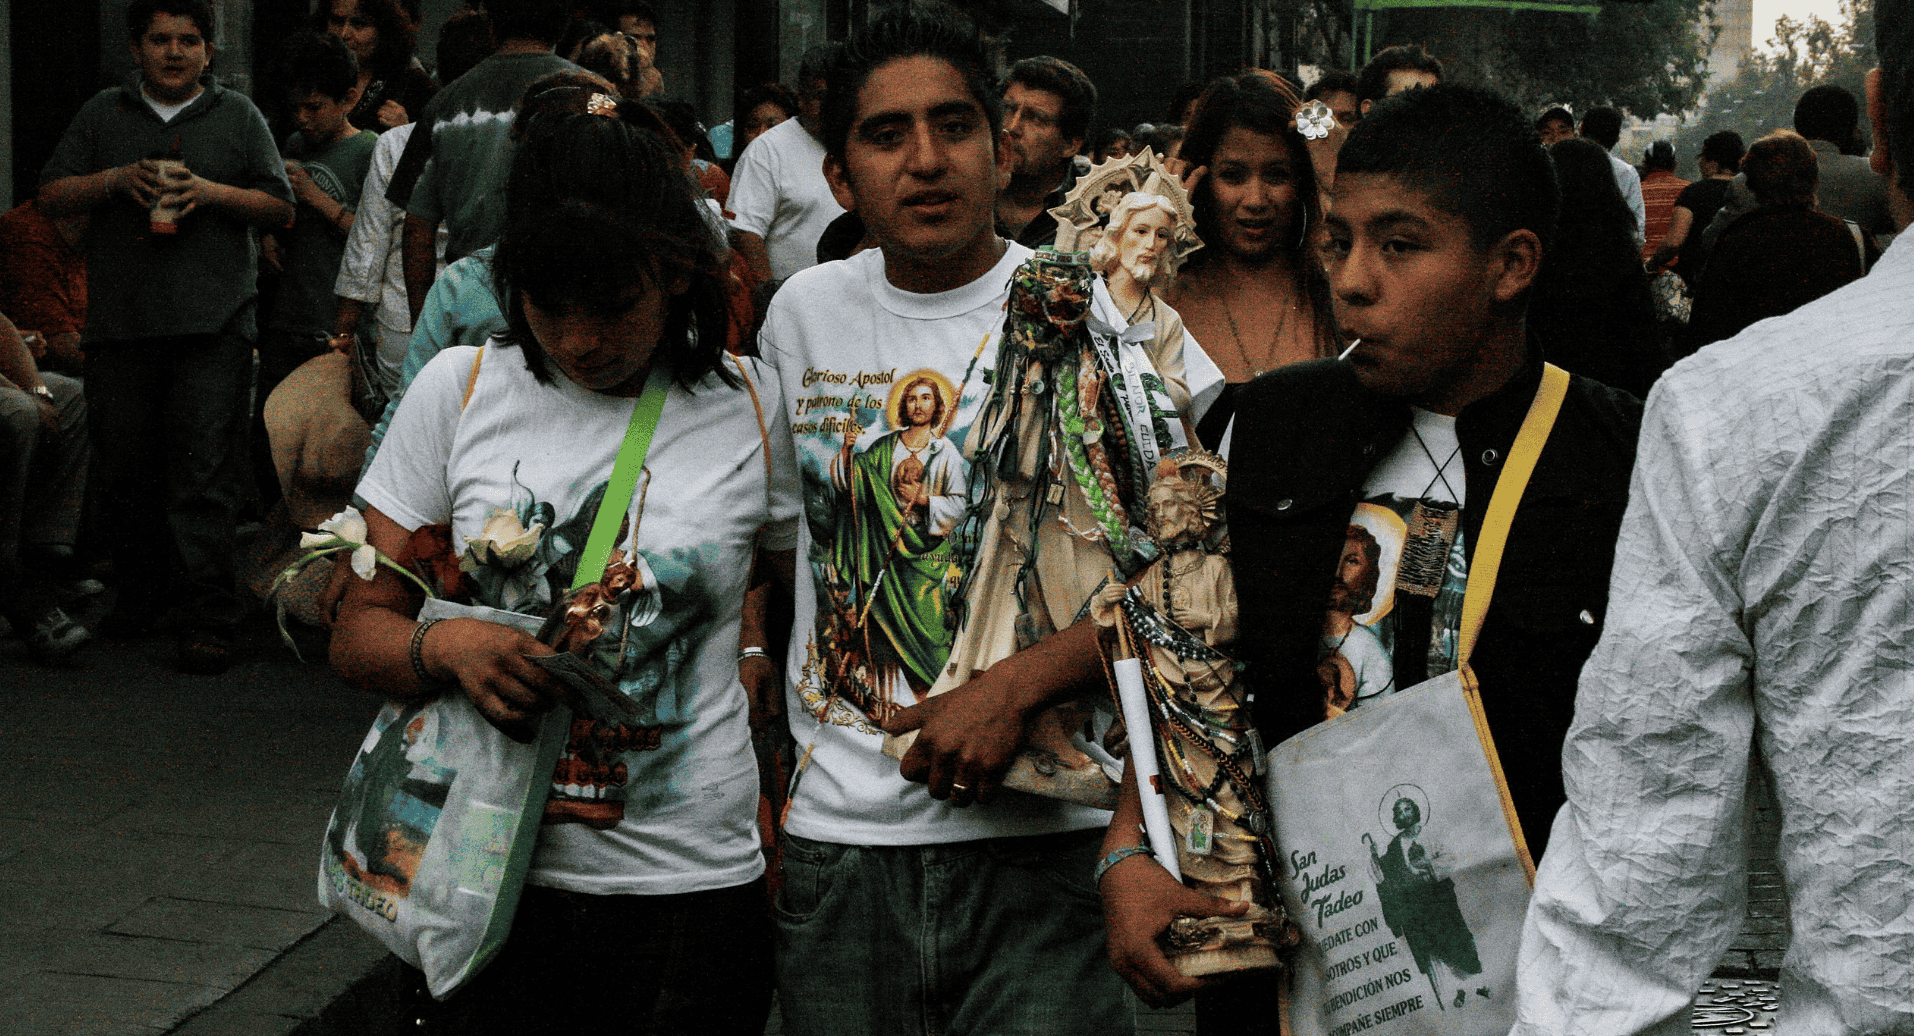 Sanjuderos en el centro de la Ciudad de México, caminando con imágenes, camisetas y escapularios de San Judas Tadeo.